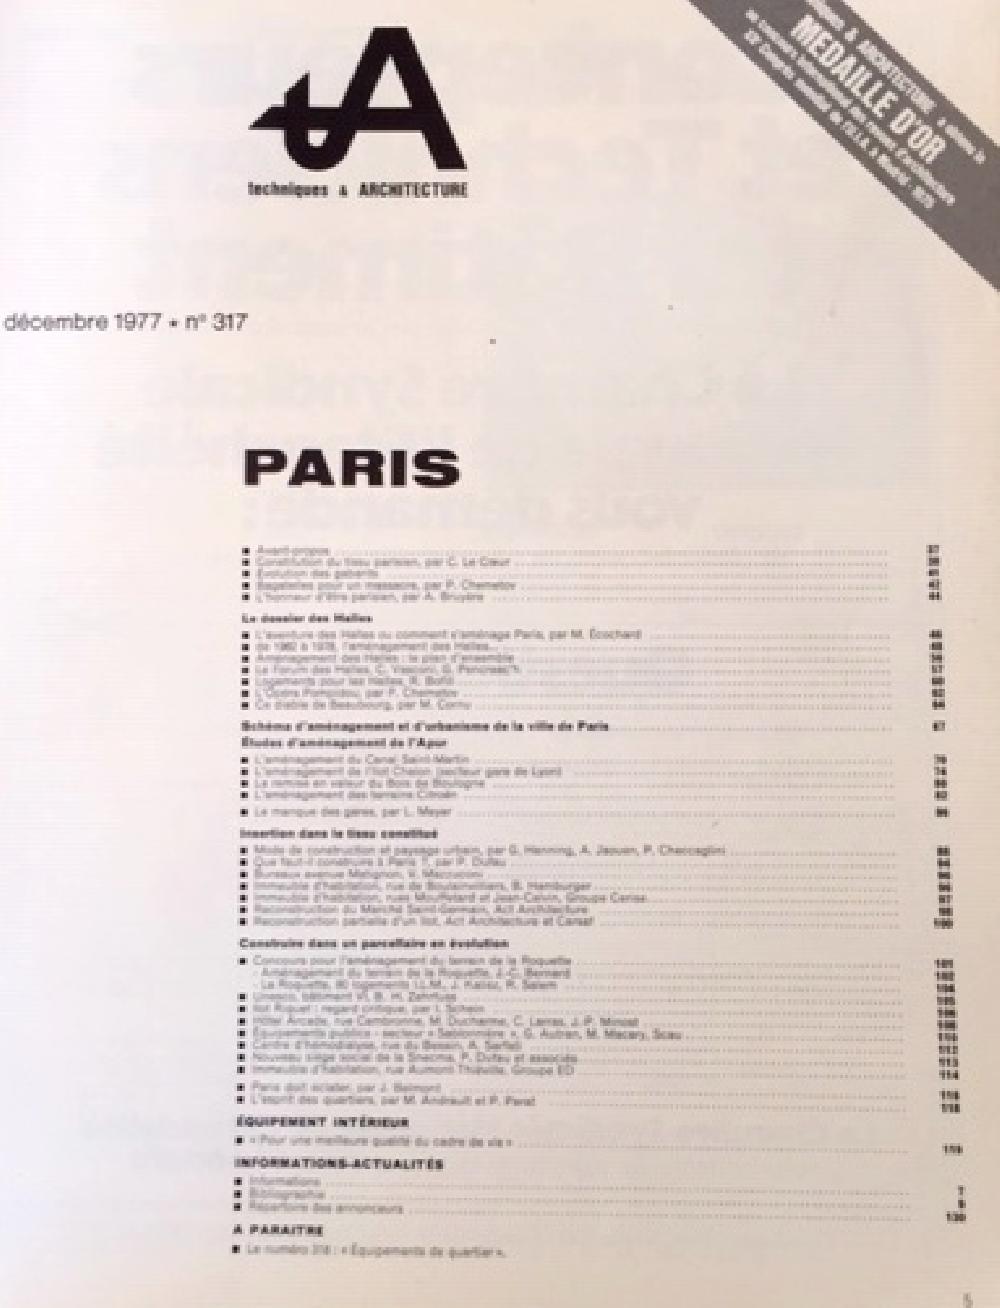 Techniques & Architecture n°317 - PARIS